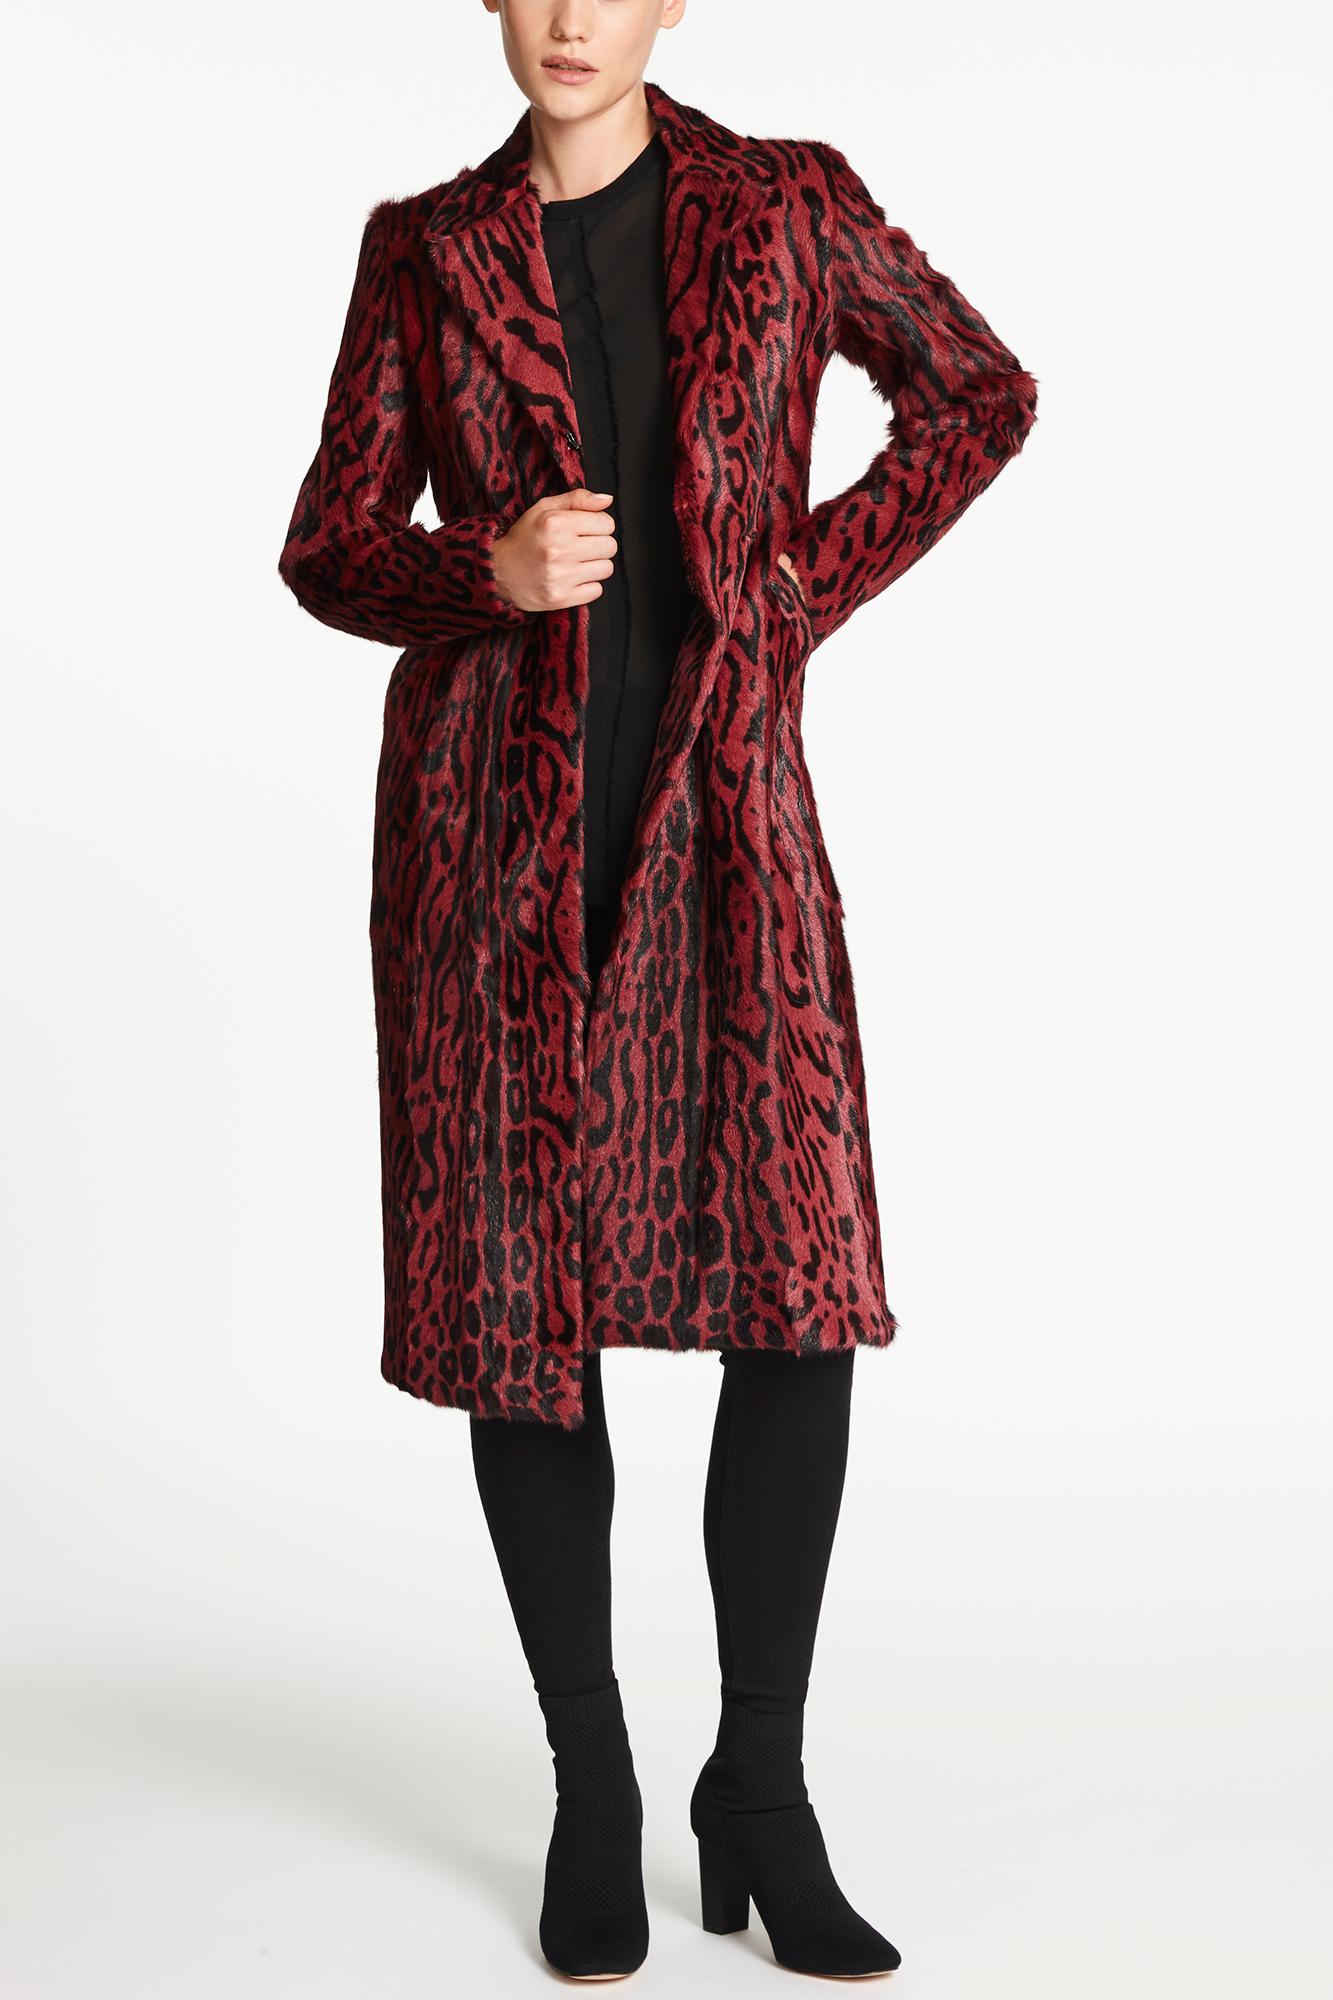 Brown Verheyen London Longline Leopard Print Coat in Ruby Red Goat Hair Fur